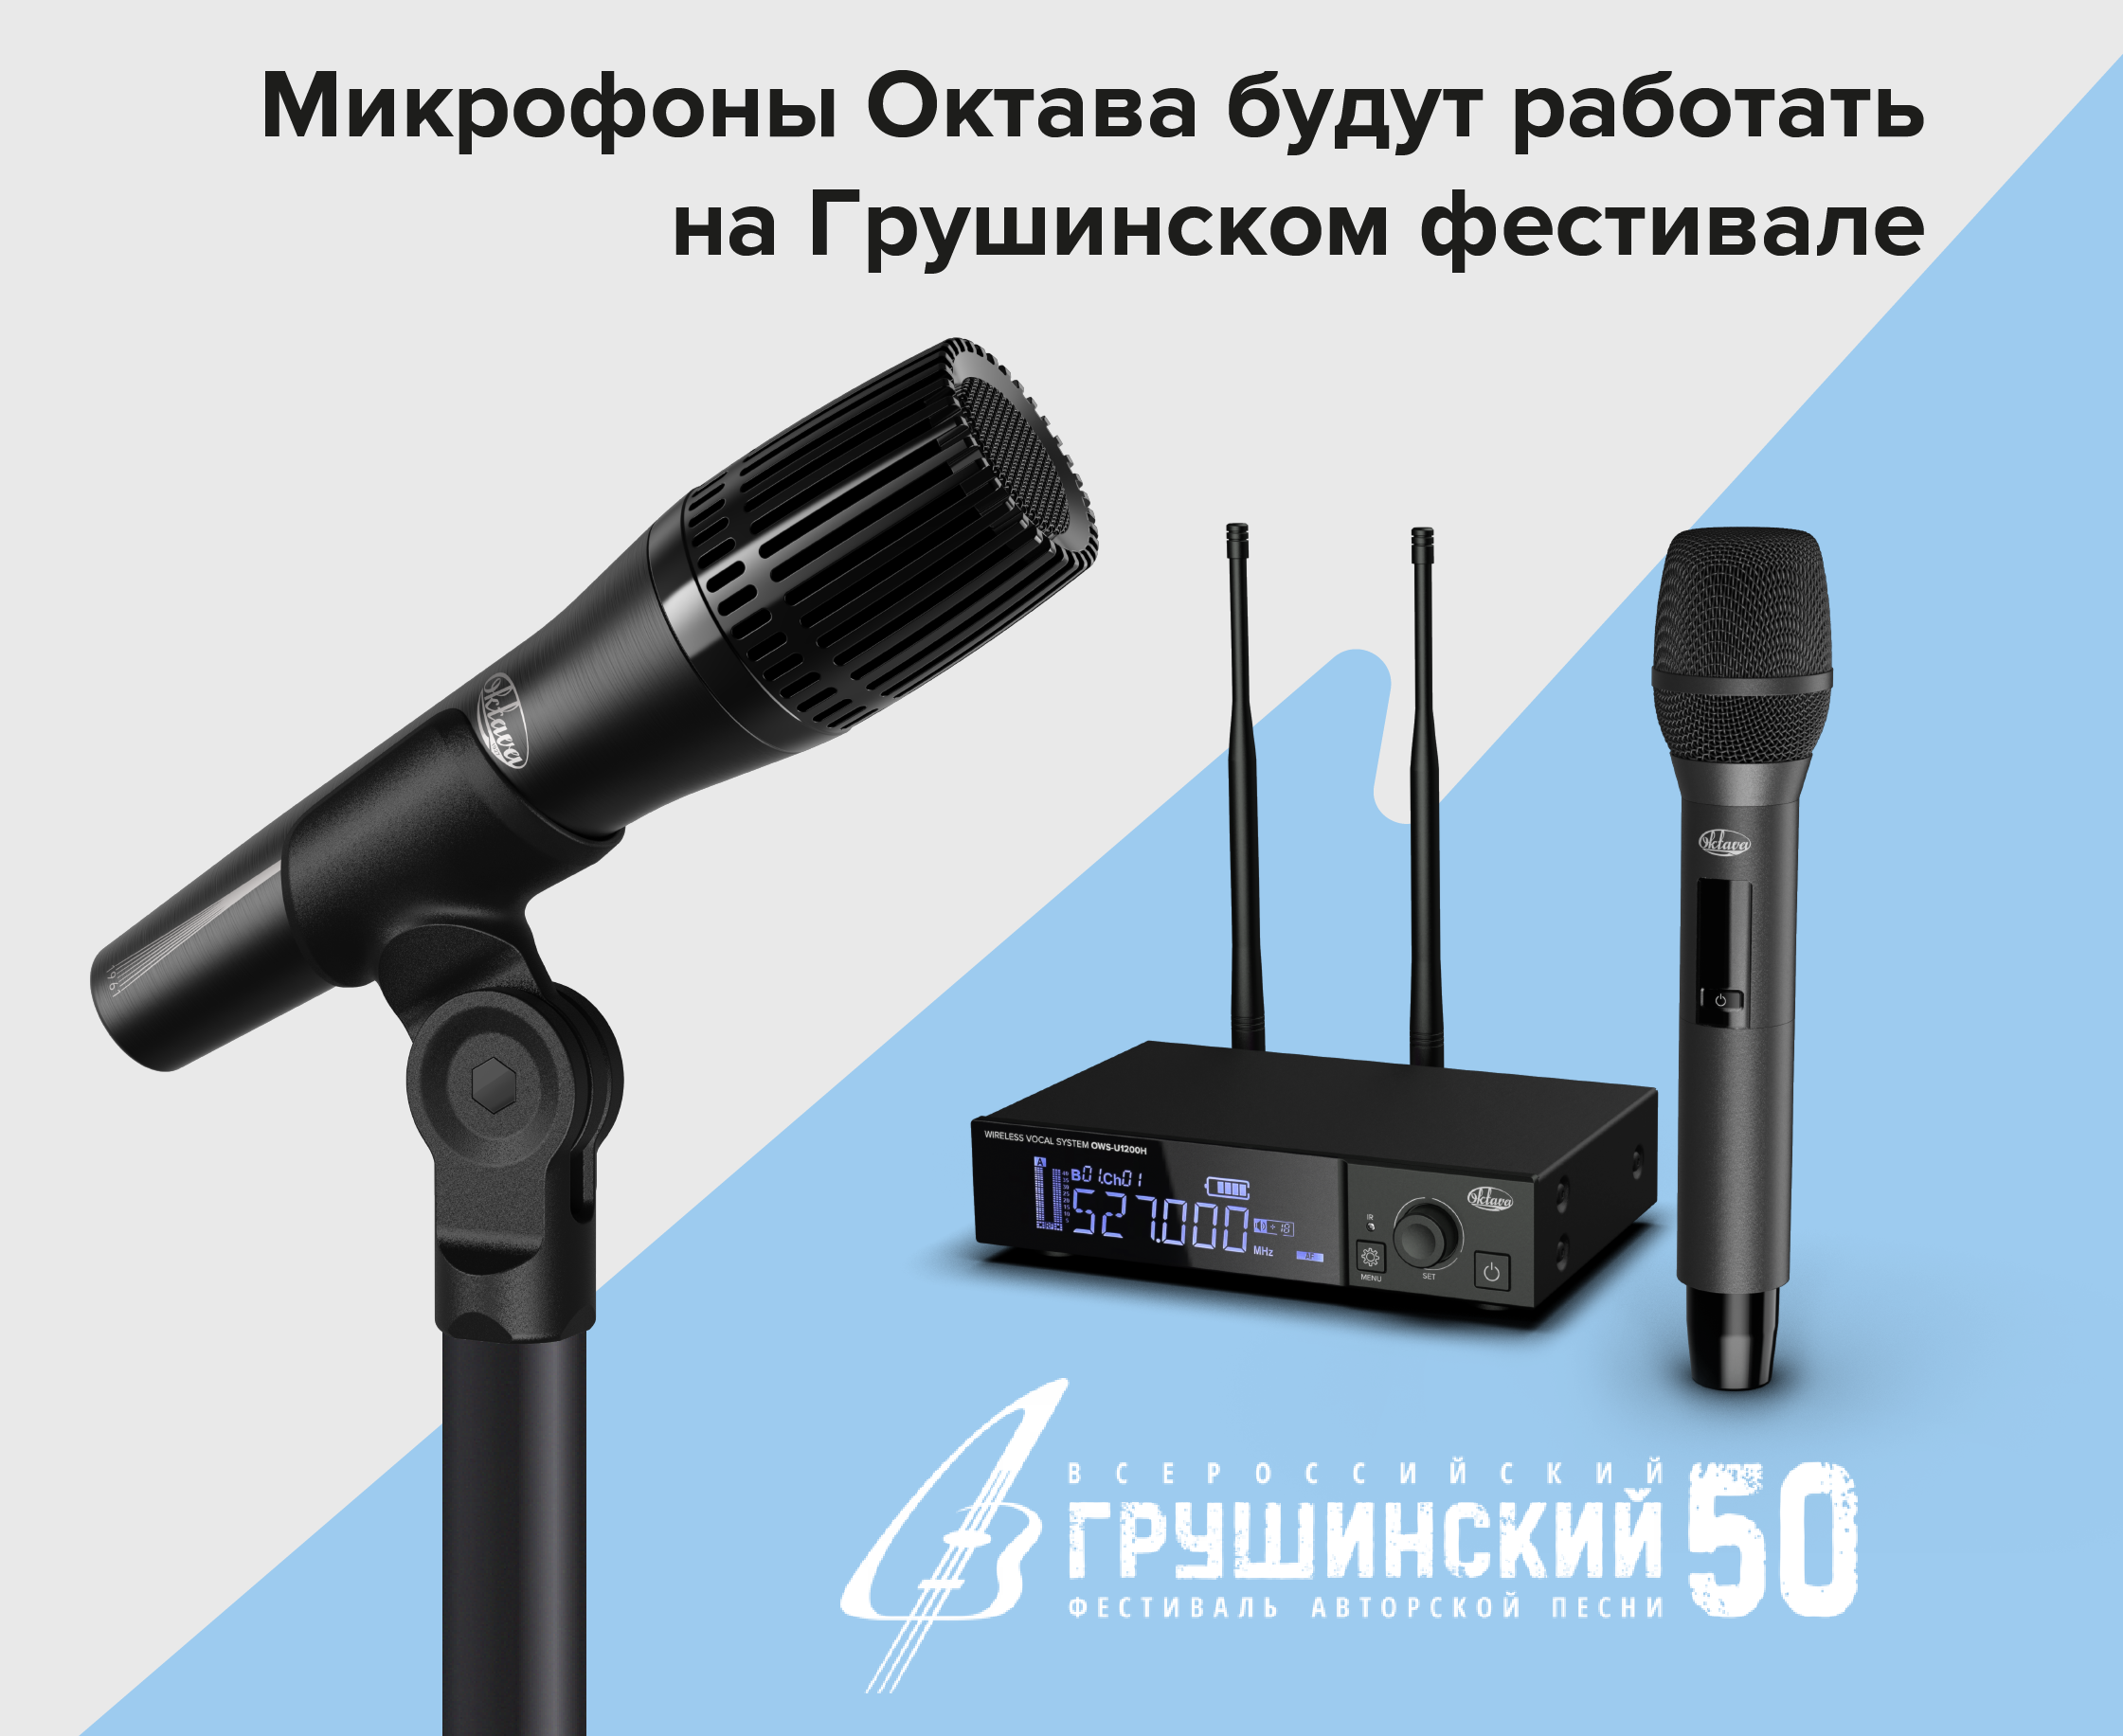 Микрофоны «Октава» представлены на Грушинском фестивале